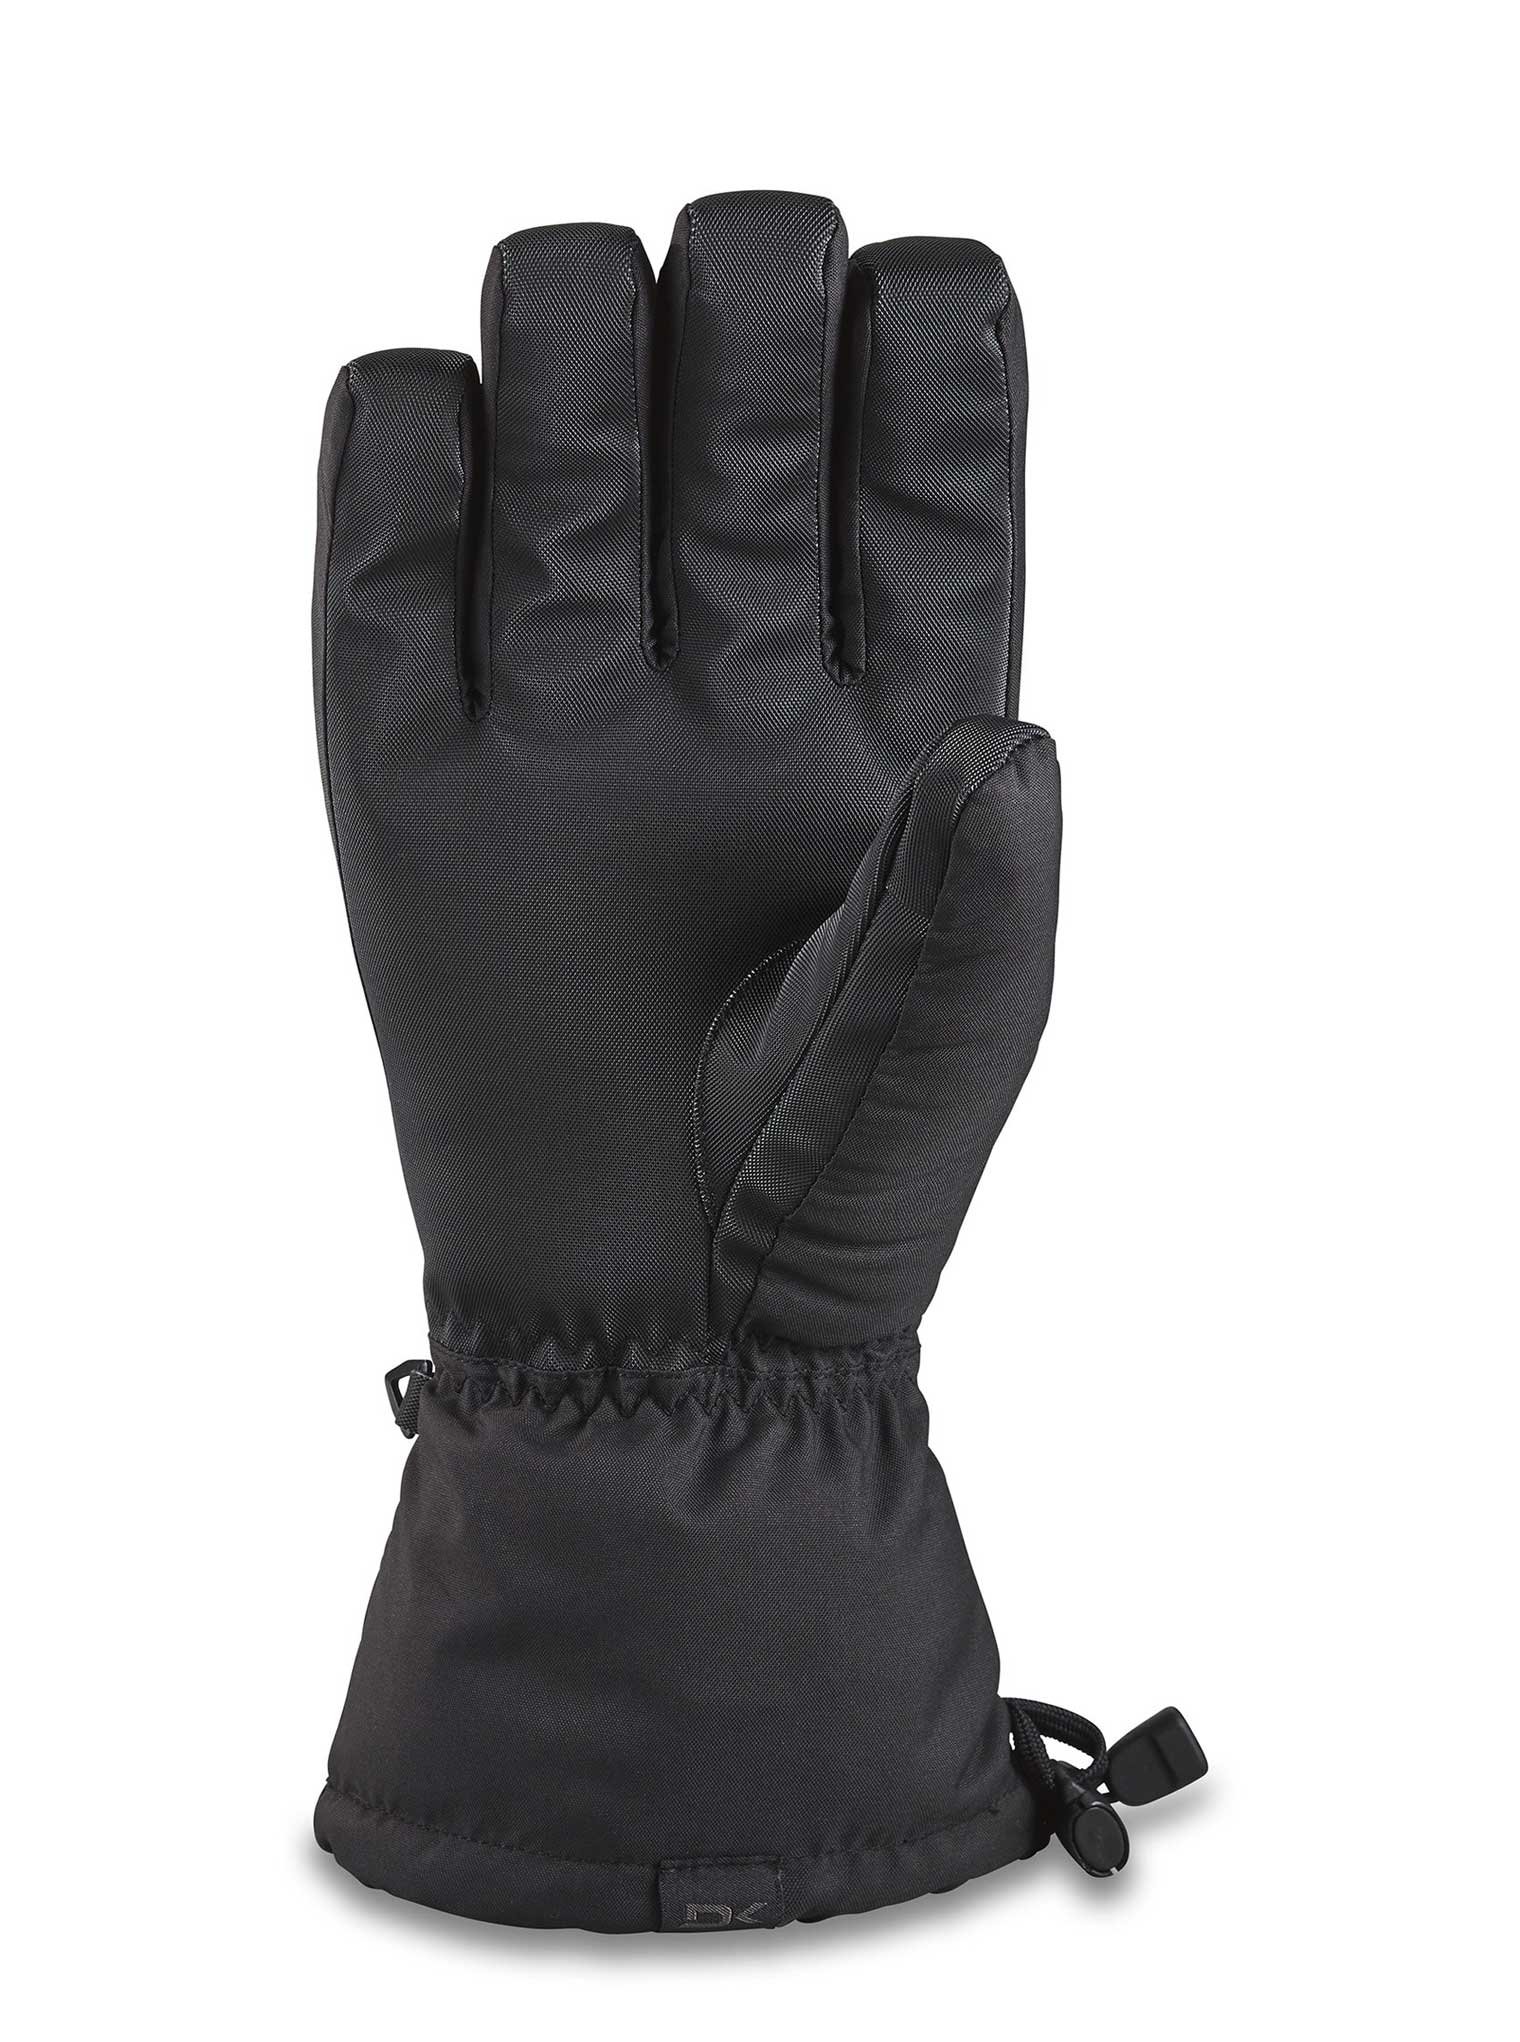 Blazer Glove